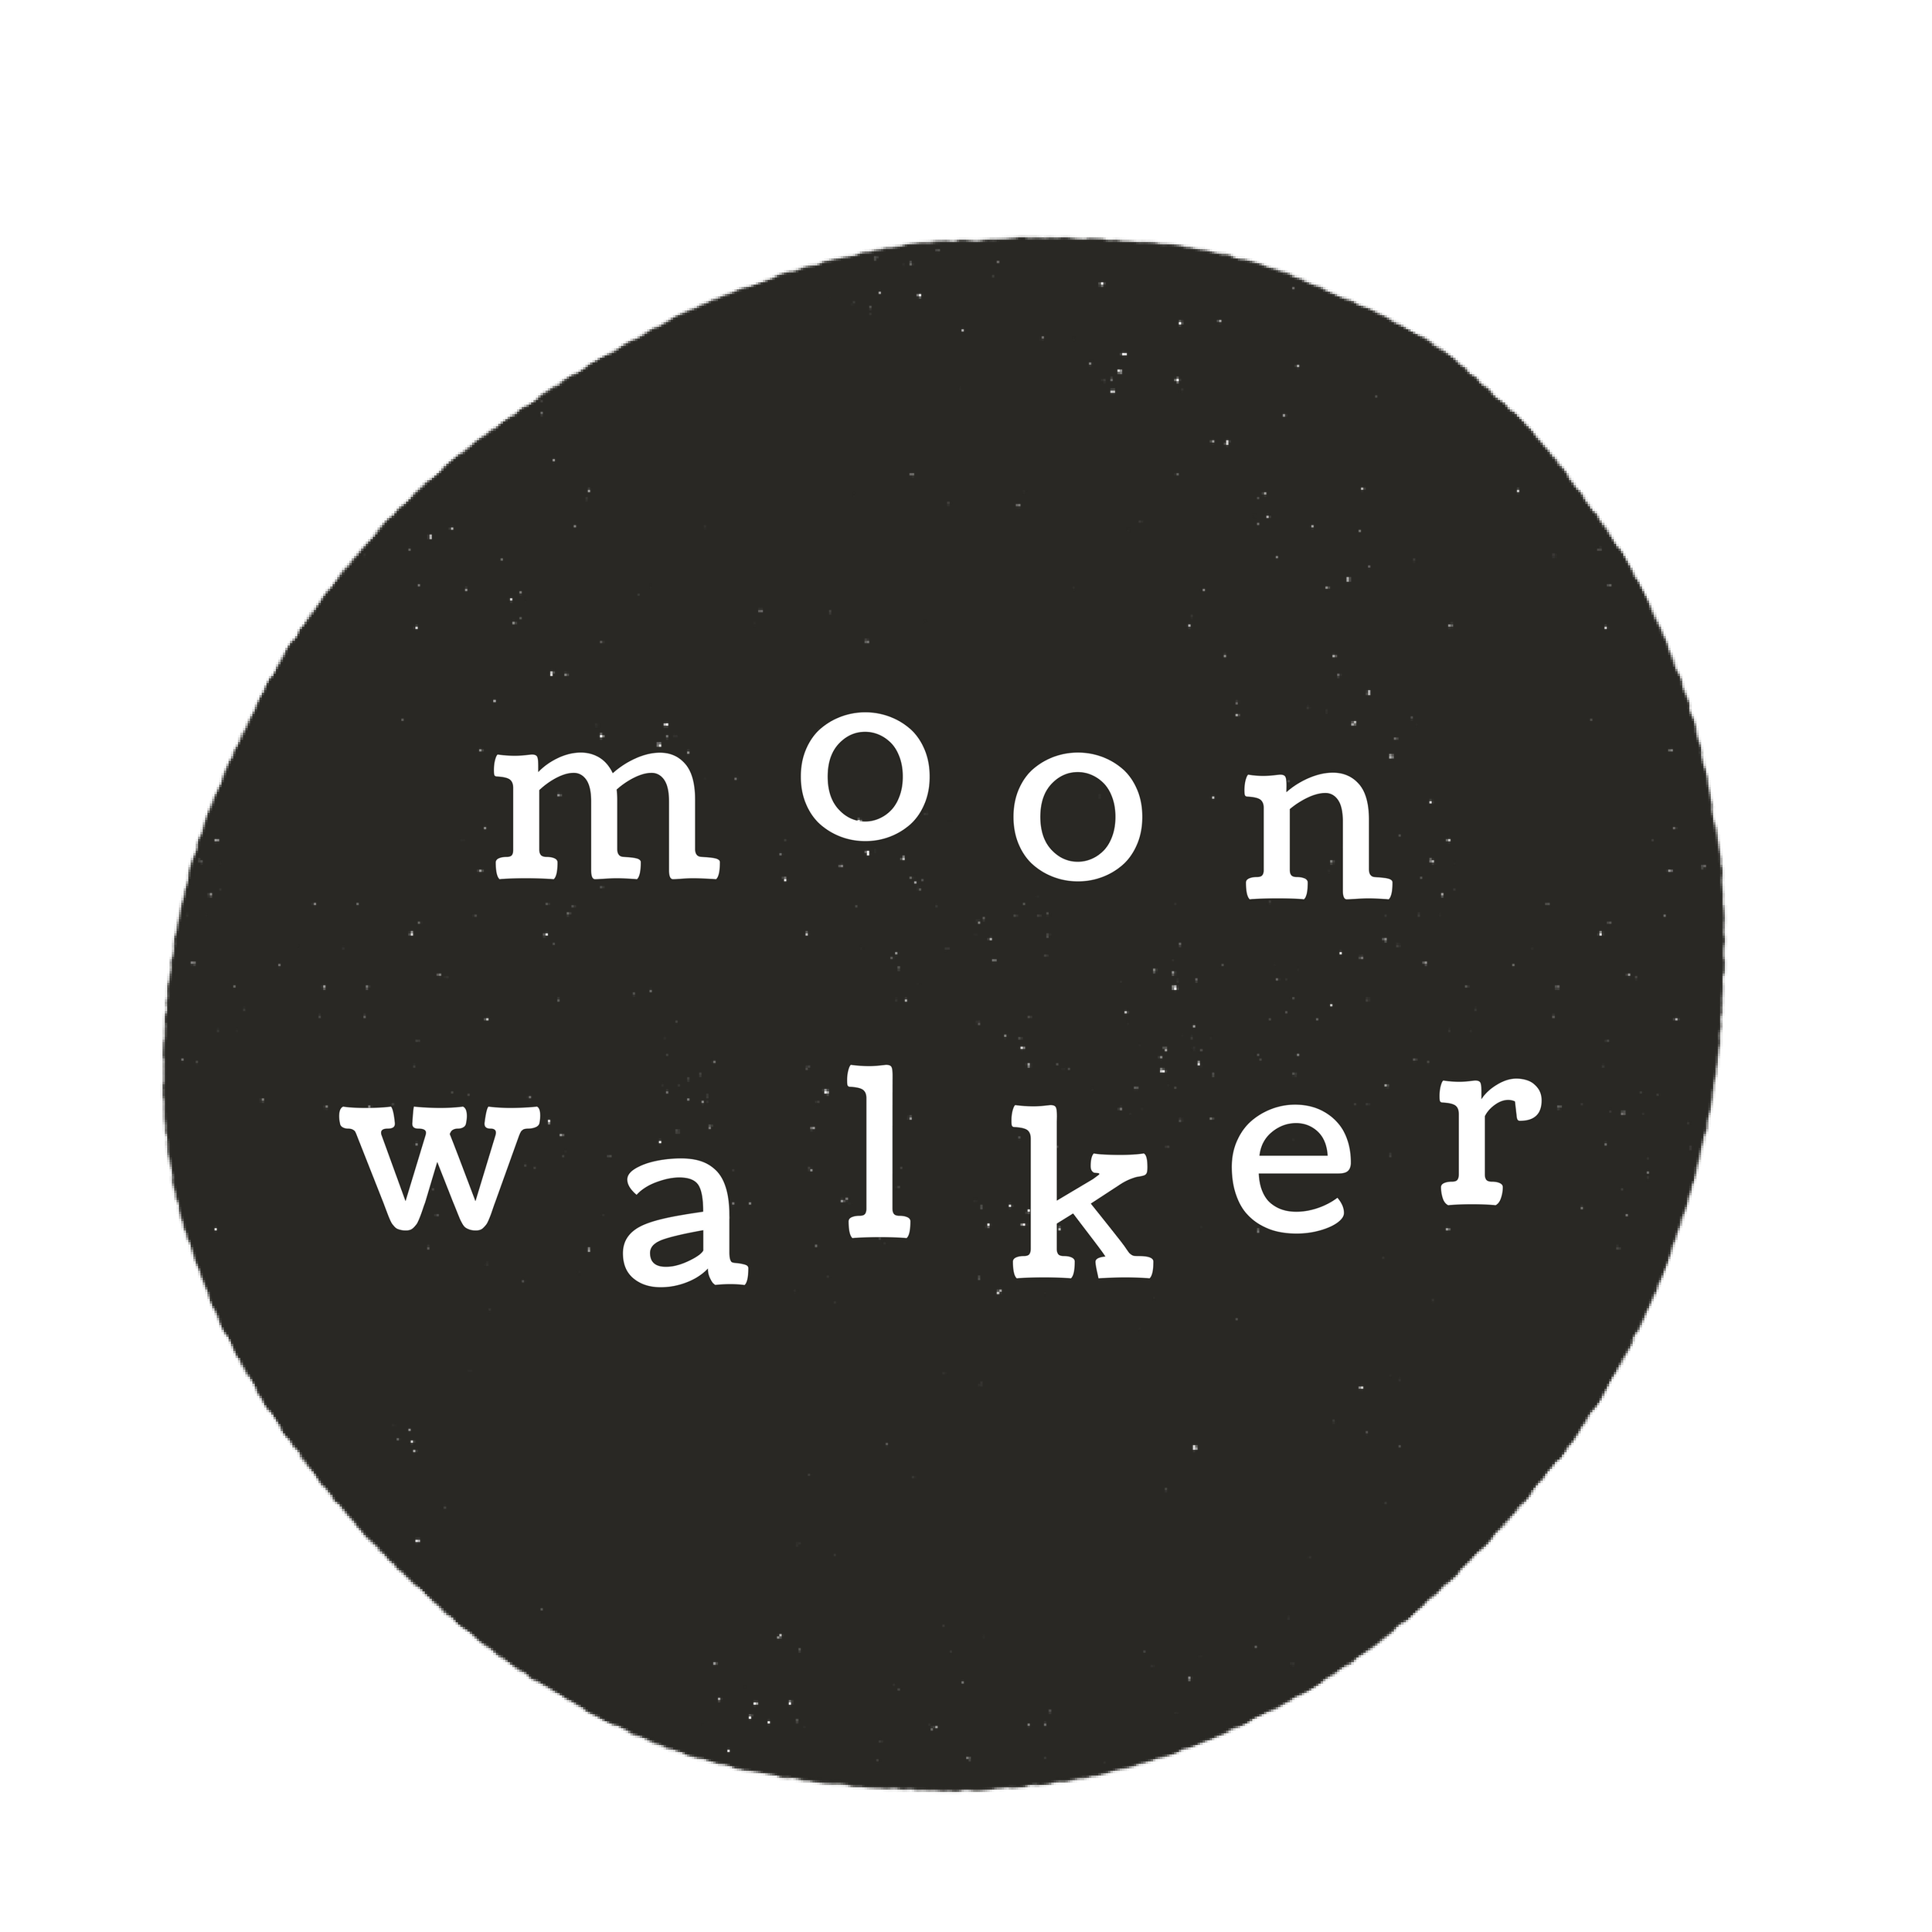 Moonwalker Orb Logo.png